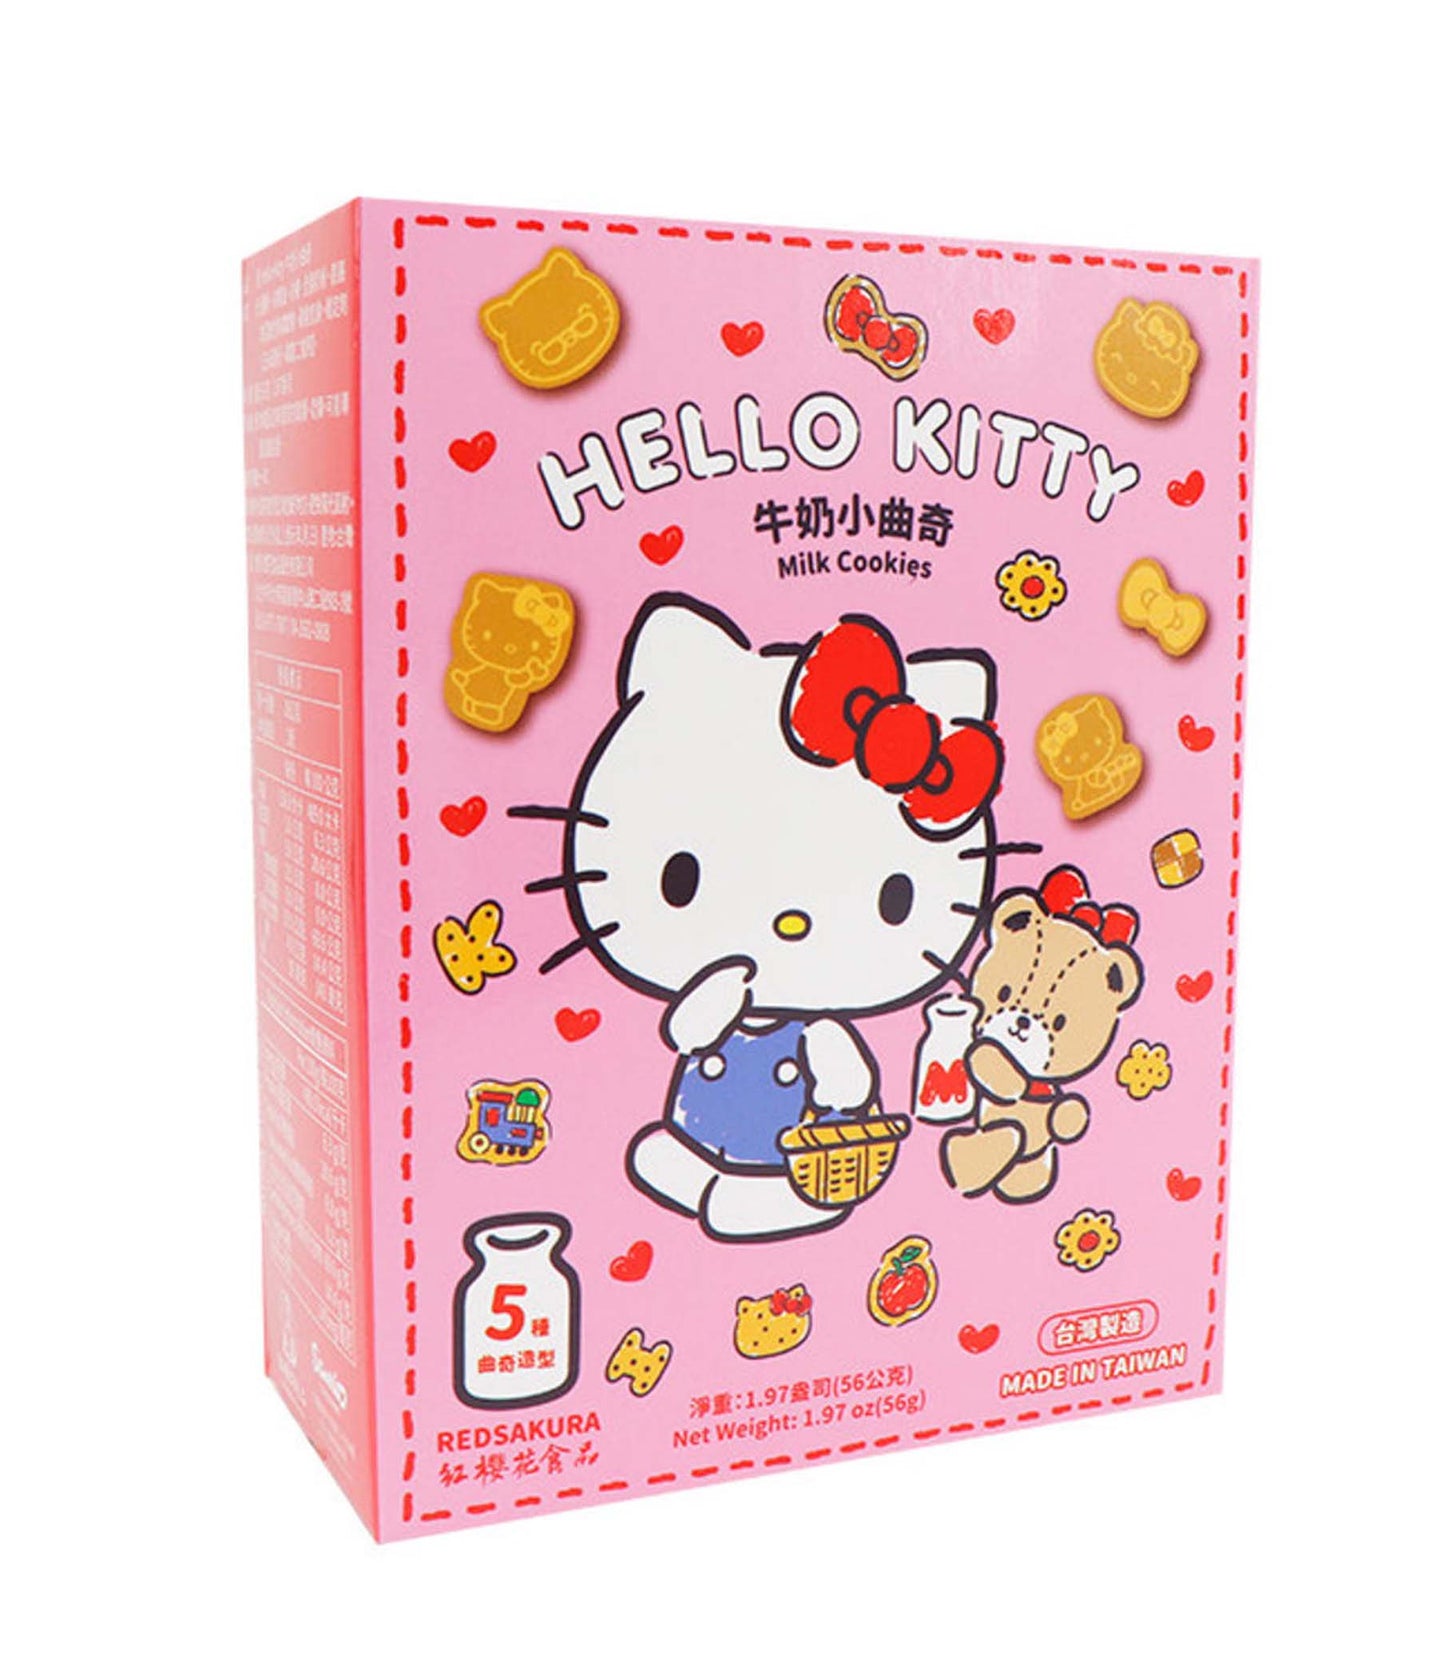 Red Sakura – Hello Kitty Milk Cookies 112g